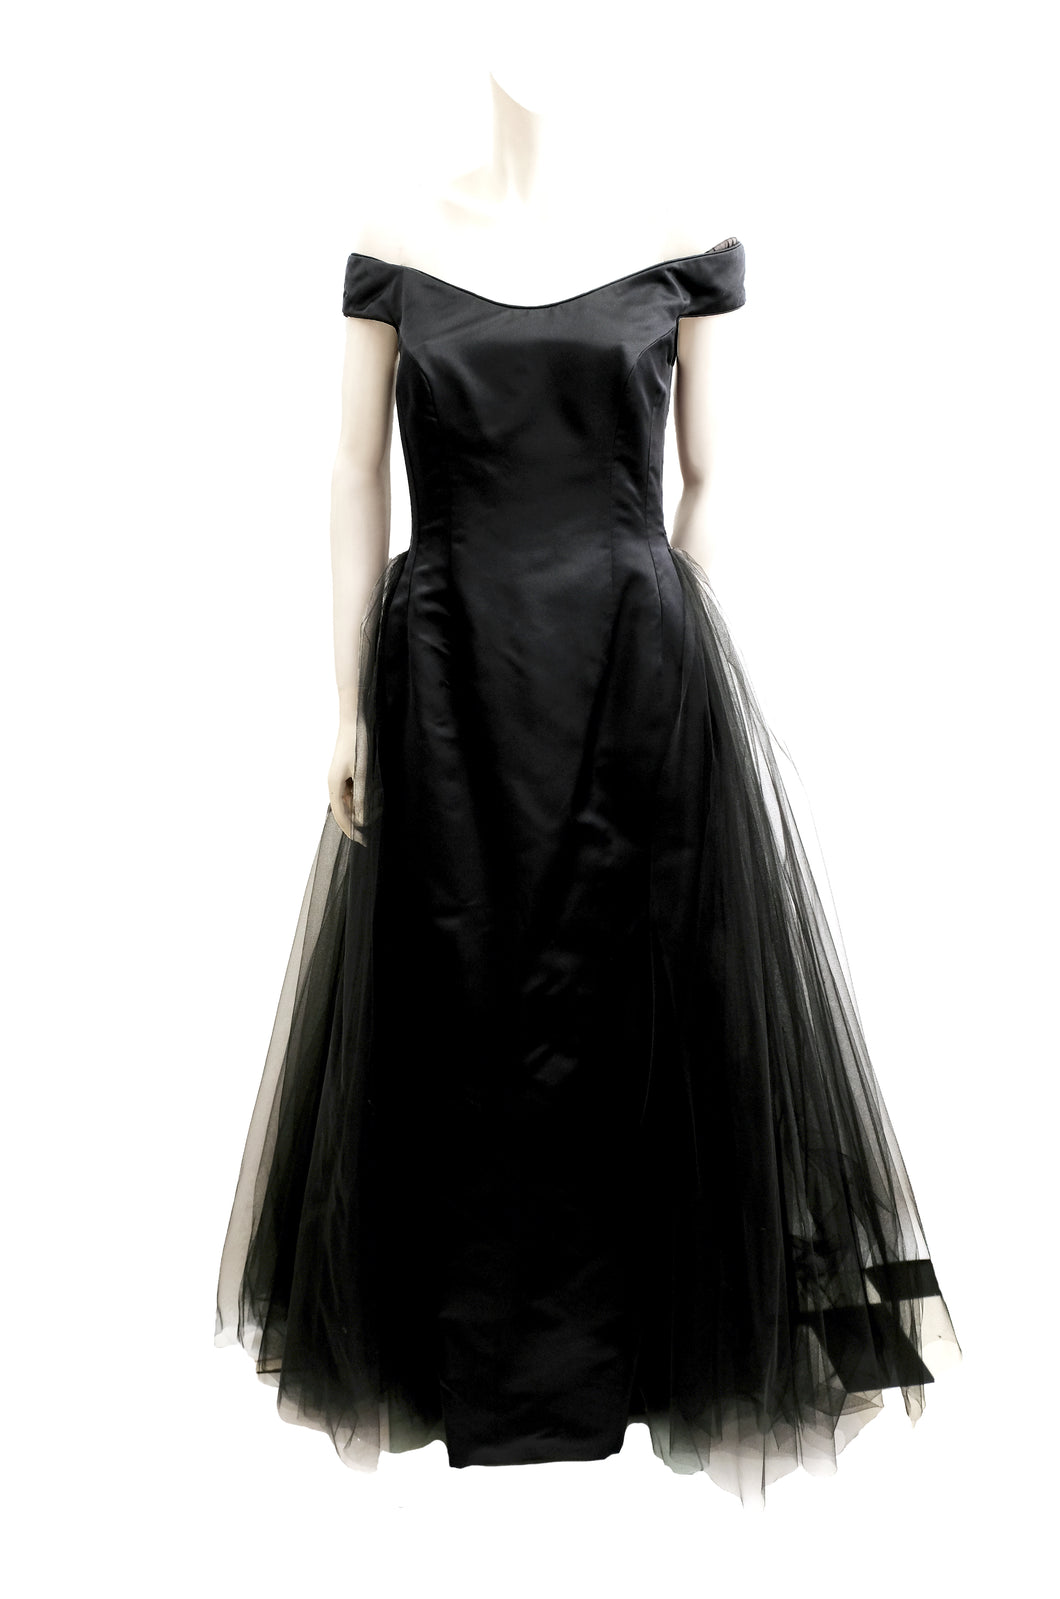 Helen Morley Black Satin and Tulle off-the-Shoulder Evening Dress, UK10